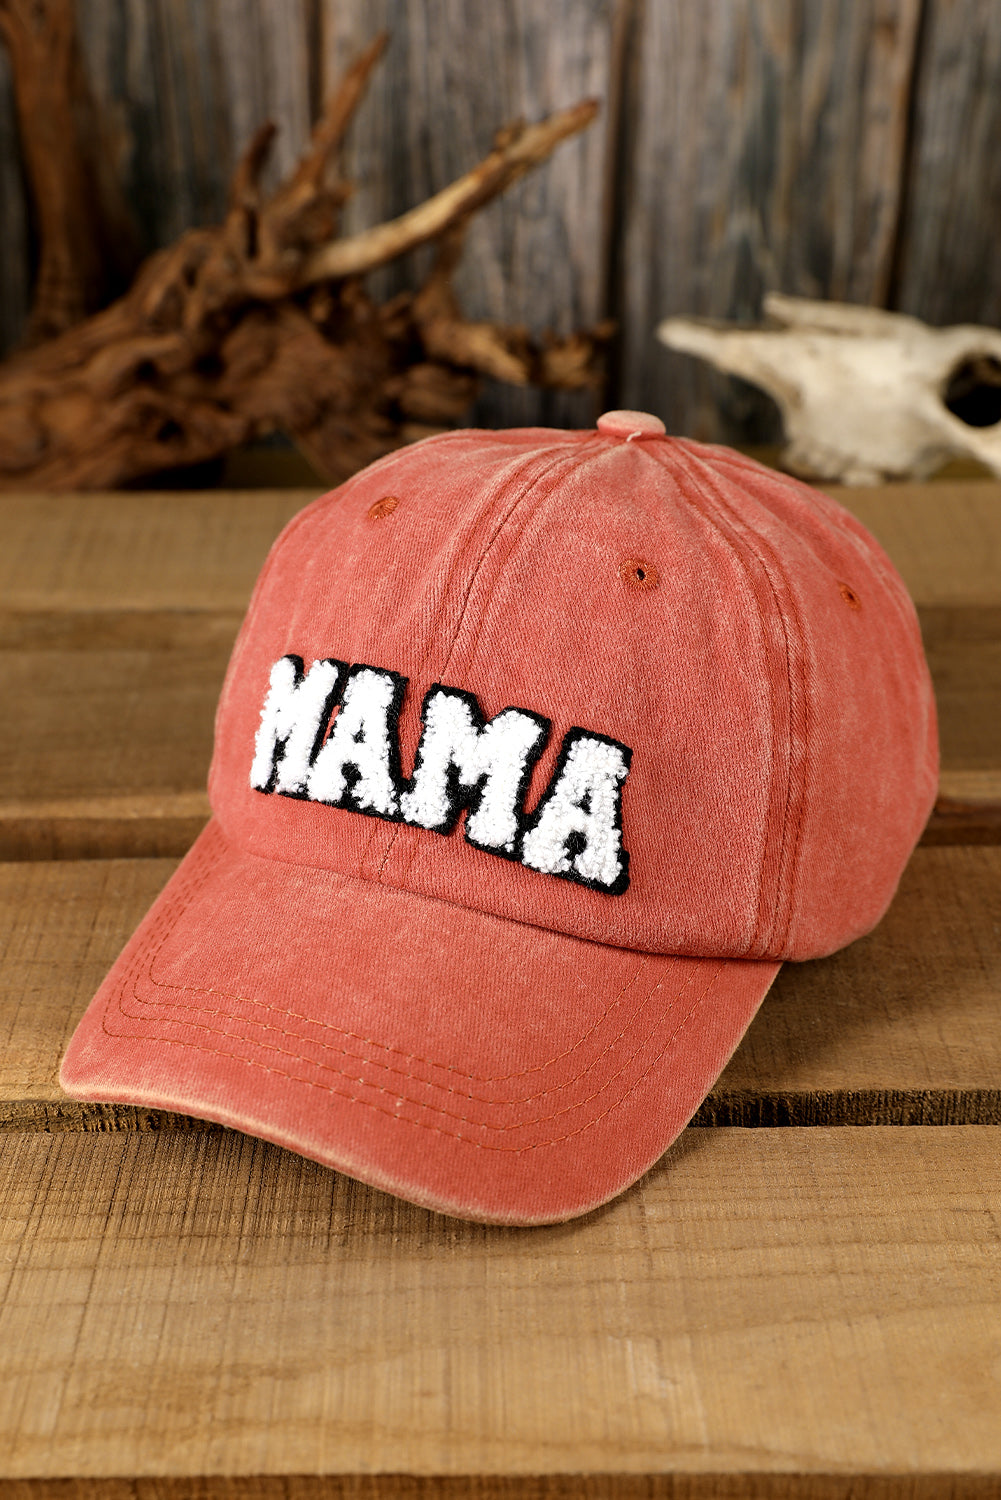 MAMA Orange Embroidered Washed Baseball Hat